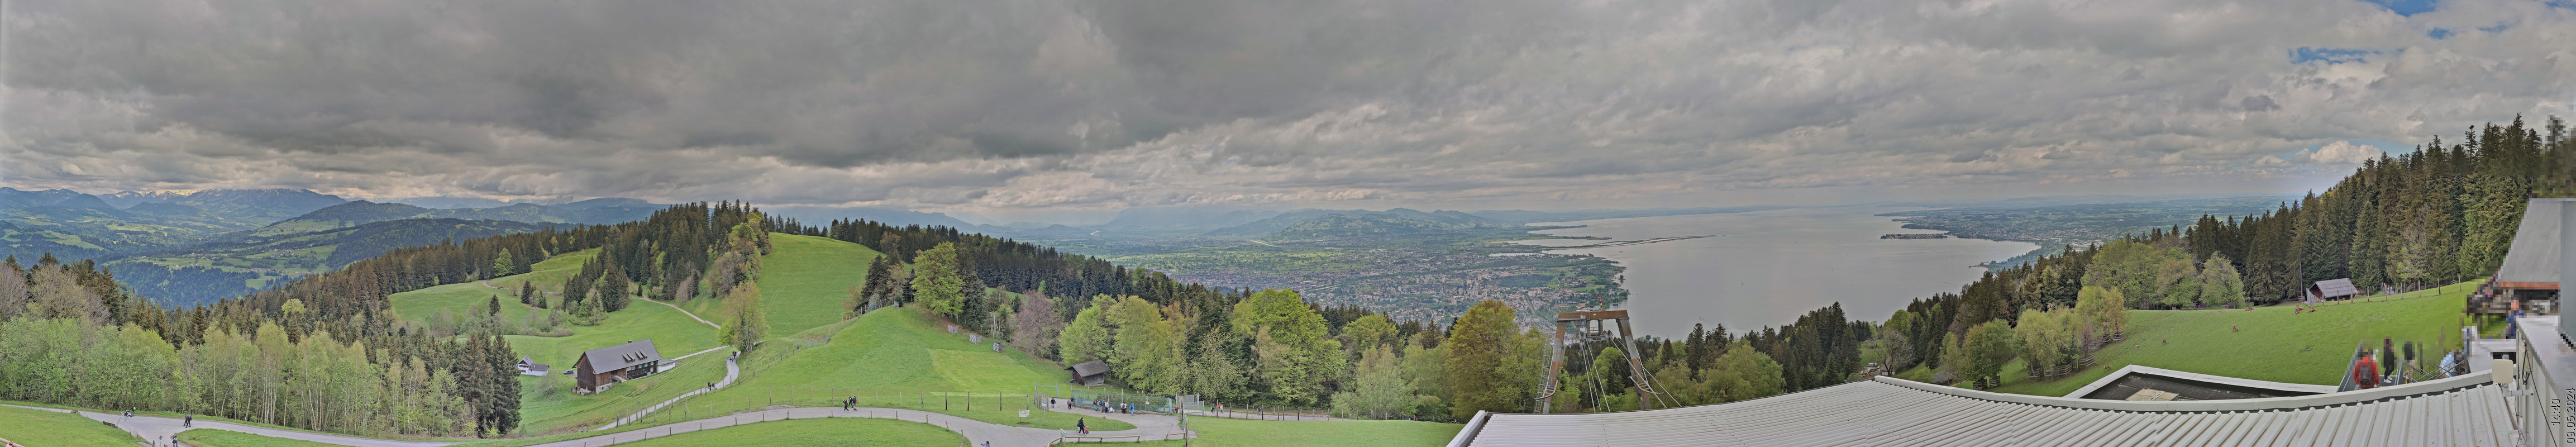 Bregenz Pfänder (View from mountain station)